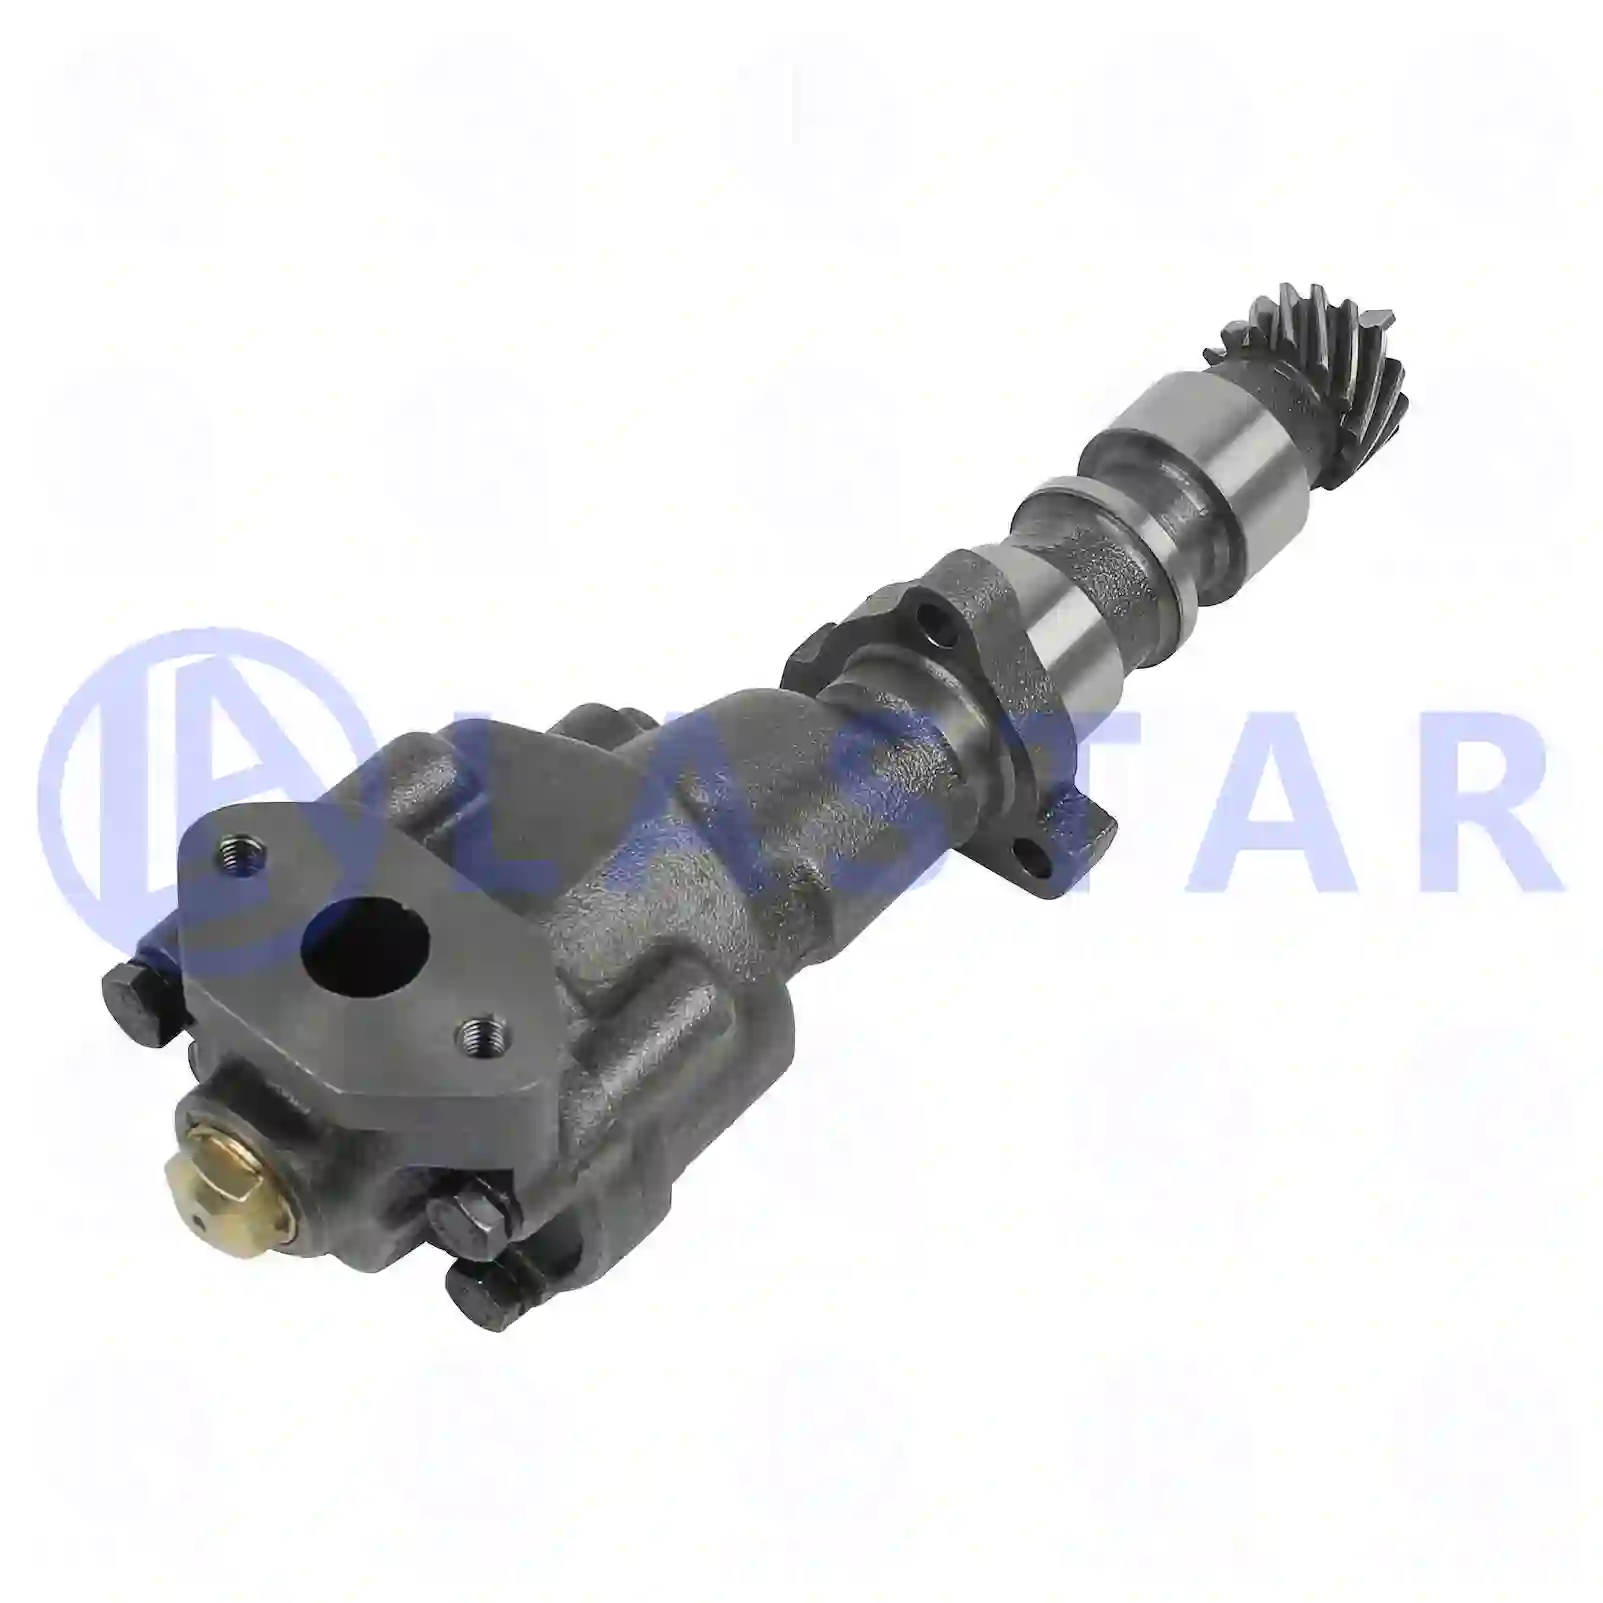  Oil pump, short version || Lastar Spare Part | Truck Spare Parts, Auotomotive Spare Parts